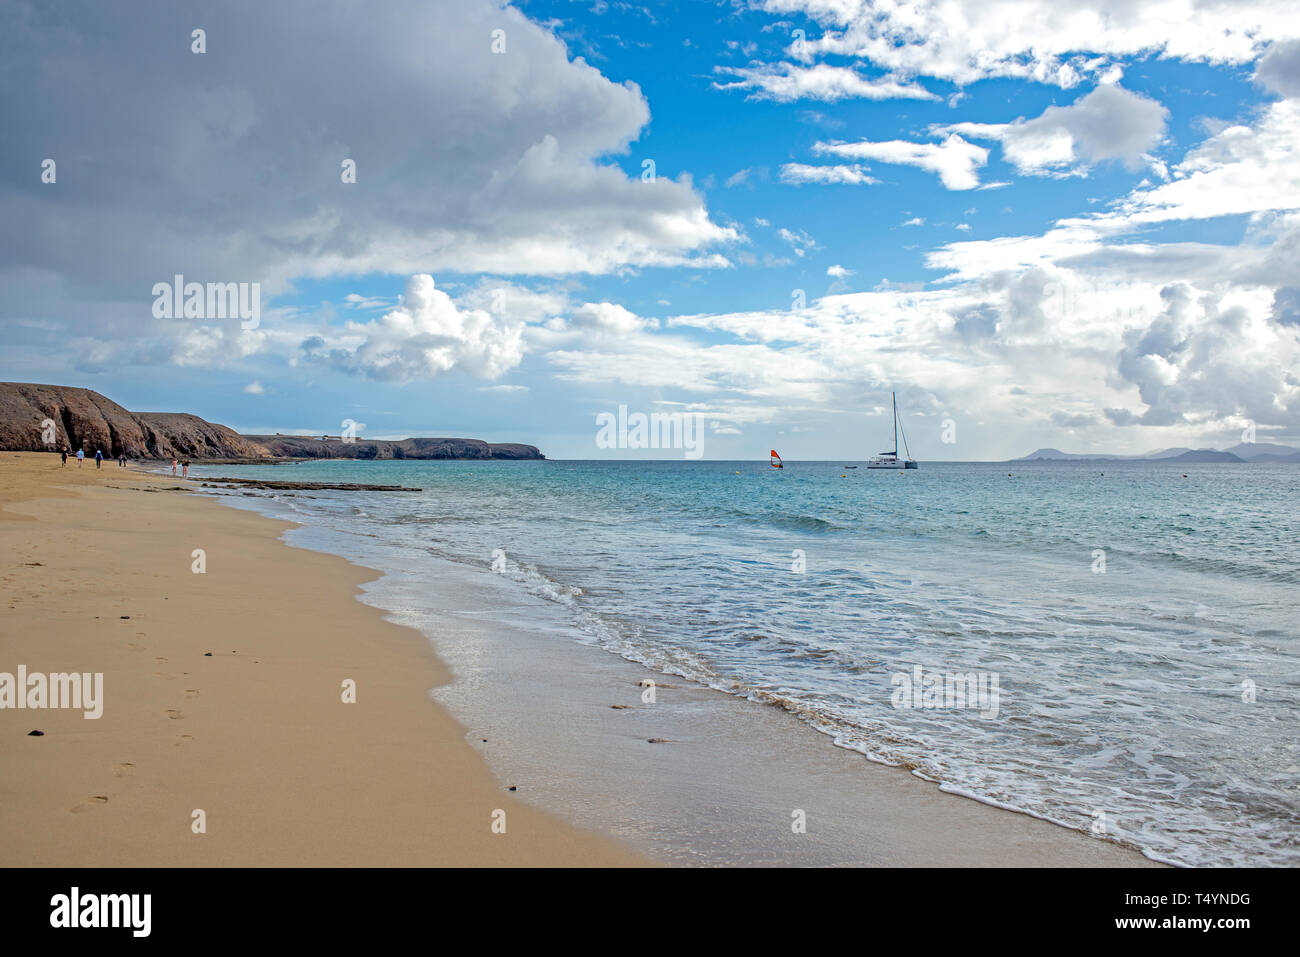 Anzeigen von Mujeres Strand auf der Insel Lanzarote, ein Segelboot und eine Windsurf im Hintergrund Stockfoto